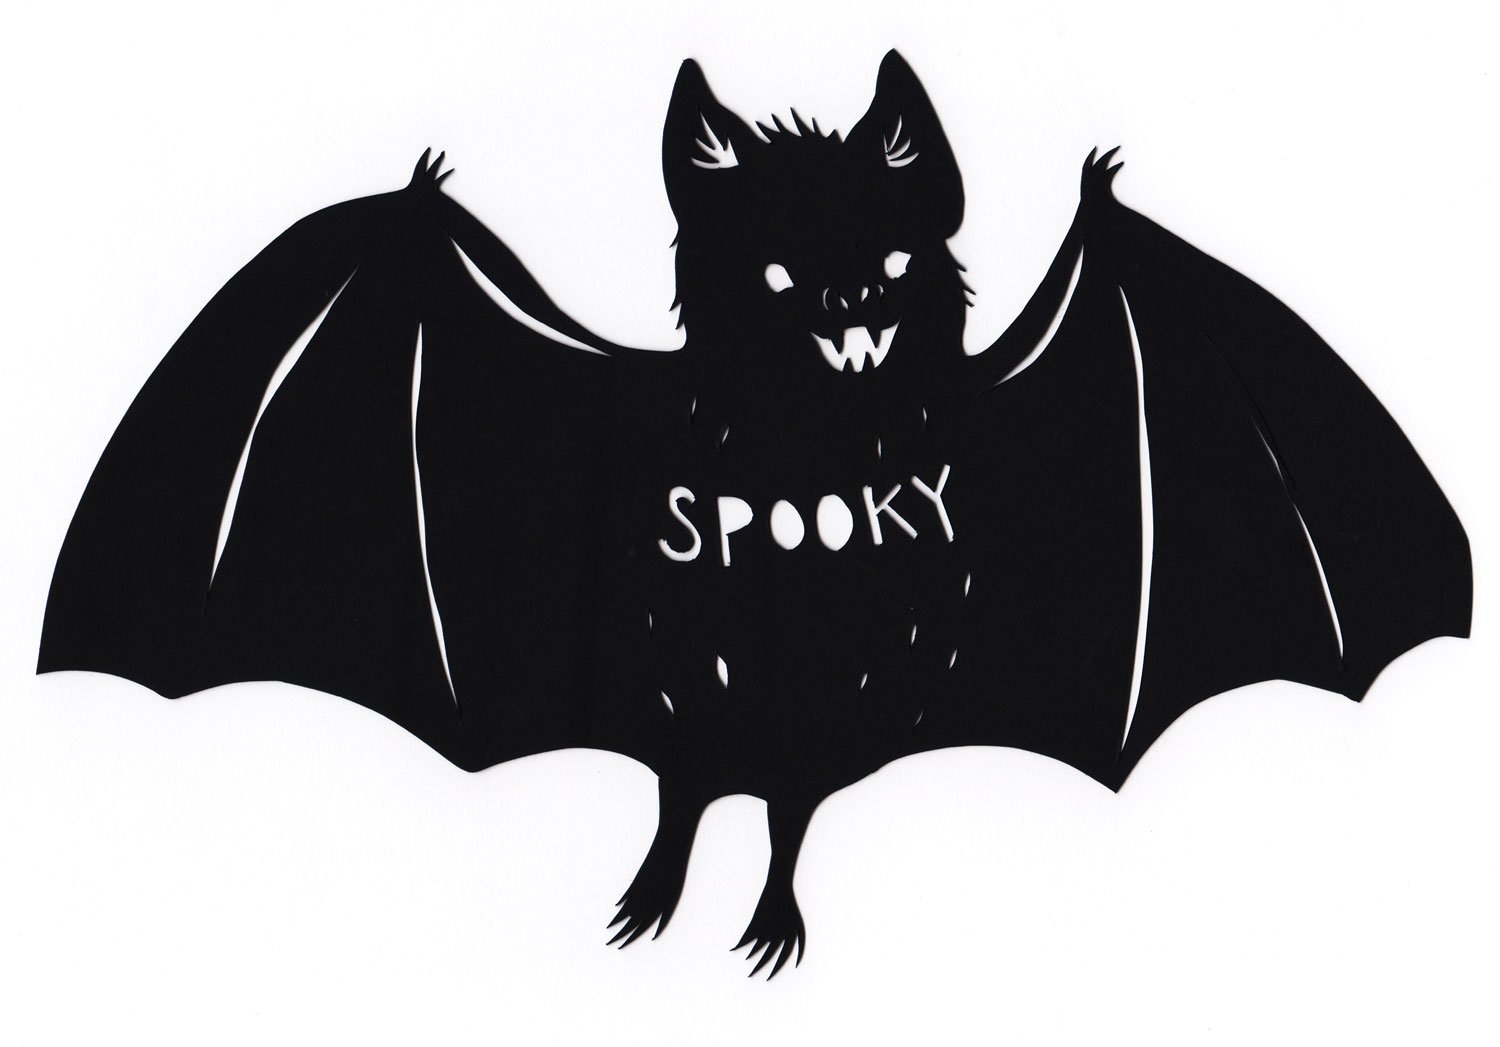 Vampire-Bat-Spooky-Silhouette-Missy-Kulik.jpg